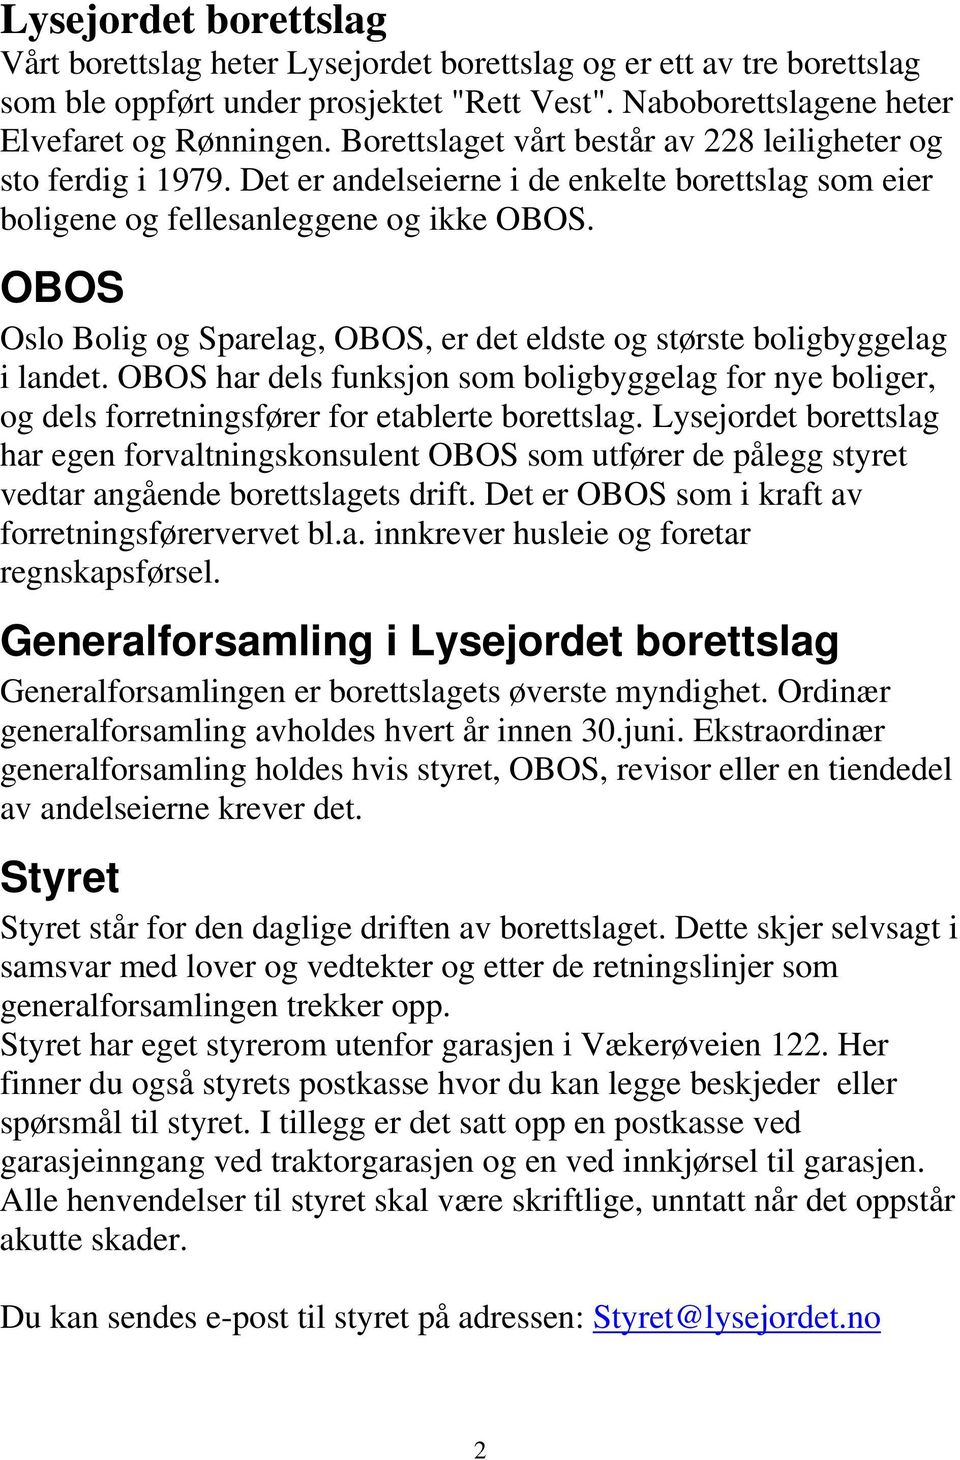 OBOS Oslo Bolig og Sparelag, OBOS, er det eldste og største boligbyggelag i landet. OBOS har dels funksjon som boligbyggelag for nye boliger, og dels forretningsfører for etablerte borettslag.